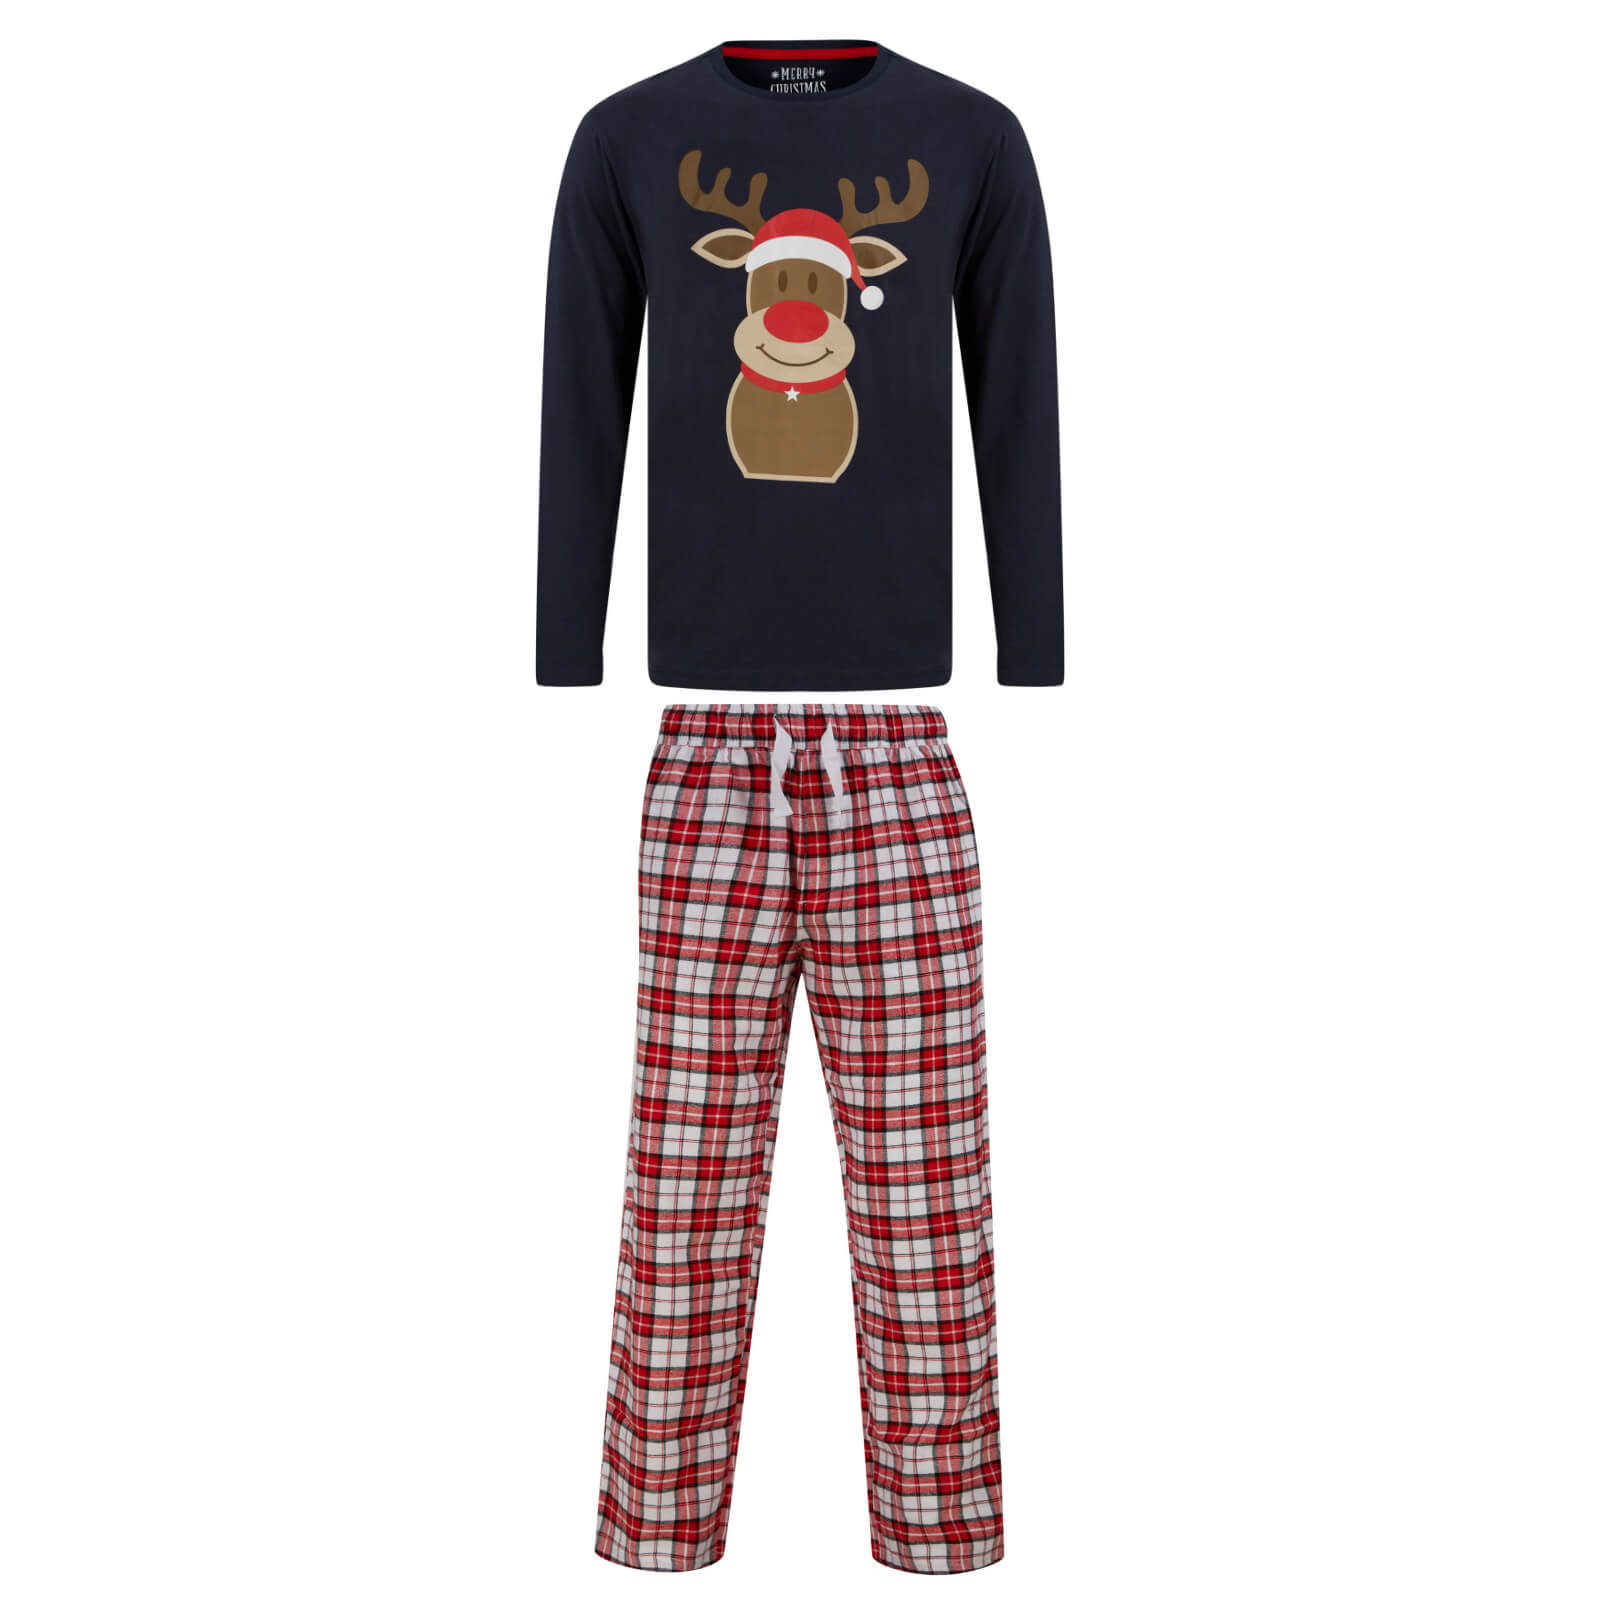 Buy Mens Christmas Pyjama Set Reindeer/Stag Check